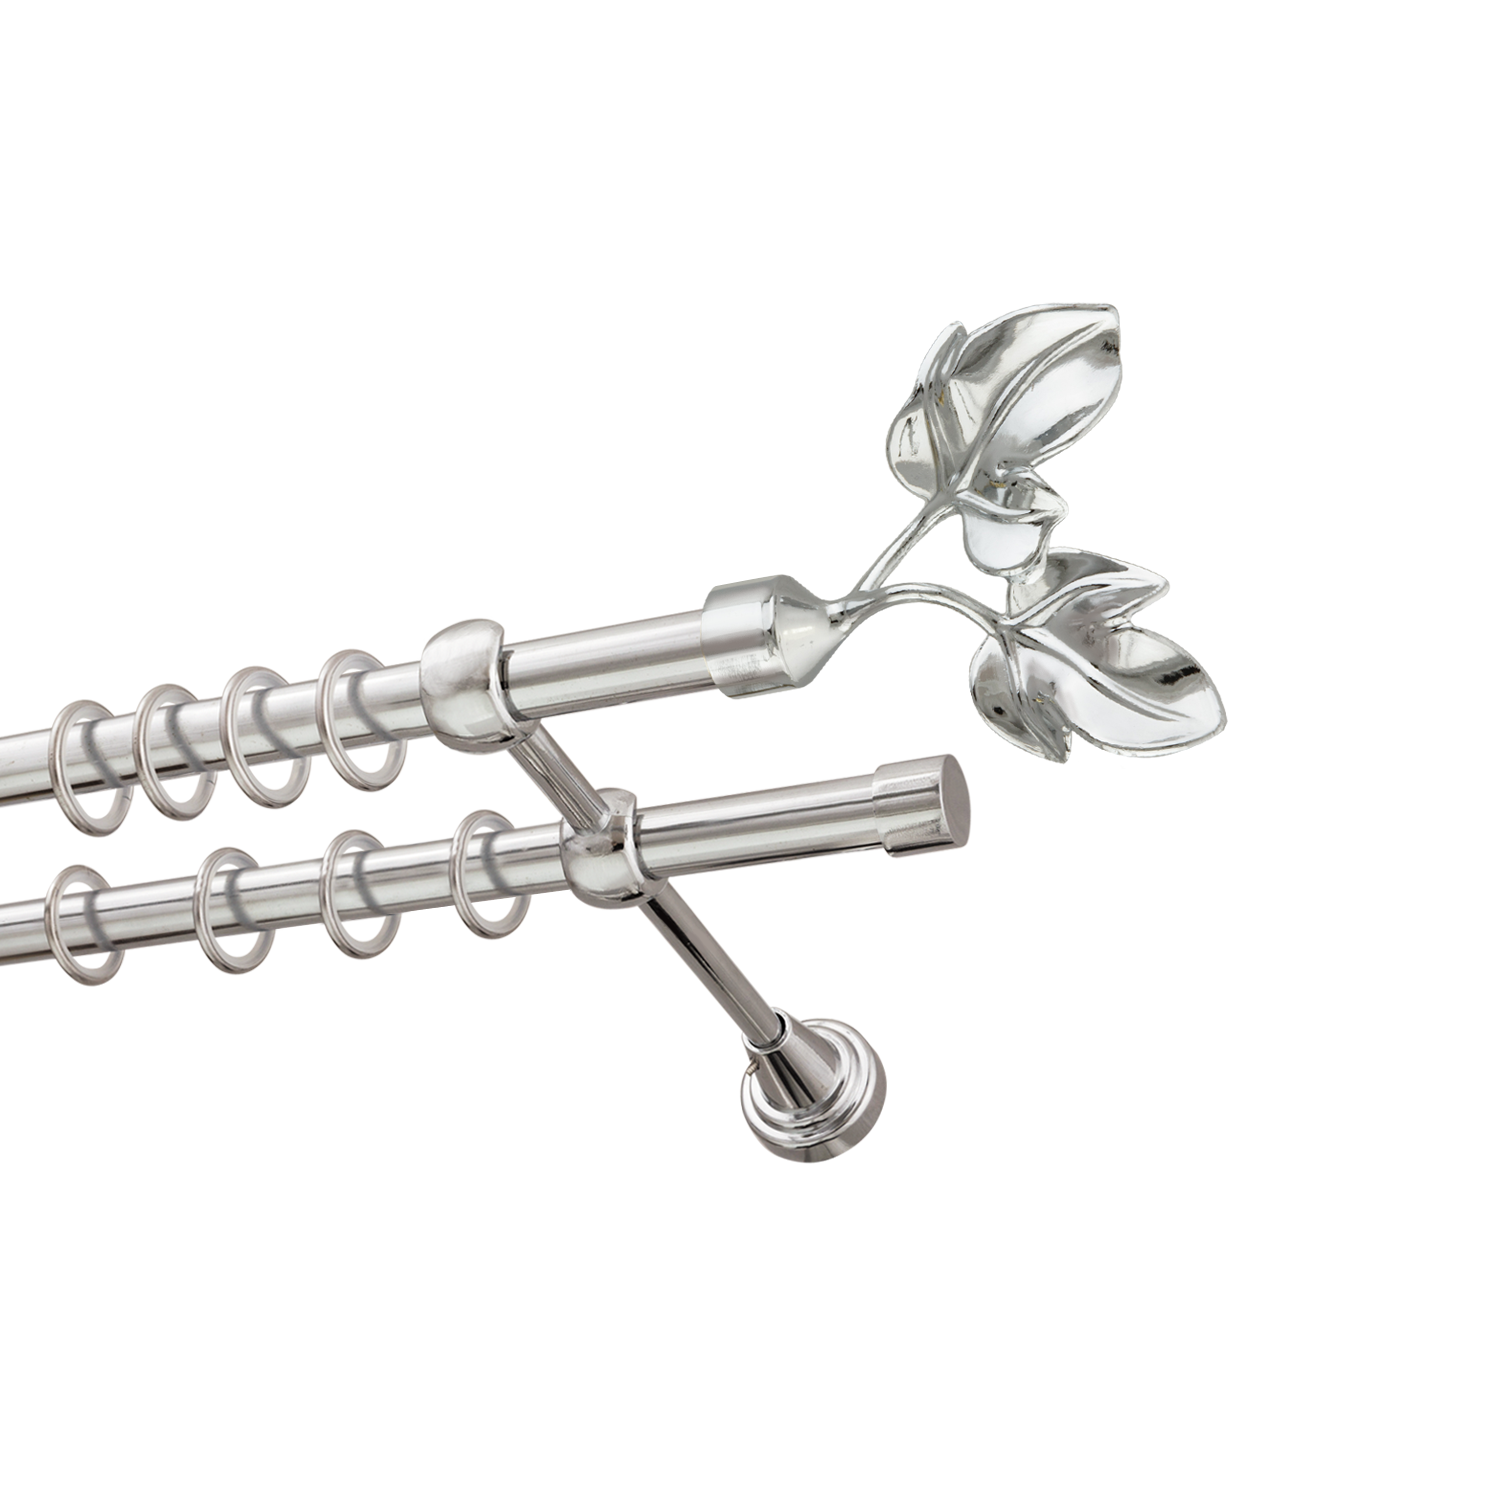 Металлический карниз для штор Листья, двухрядный 16/16 мм, серебро, гладкая штанга, длина 140 см - фото Wikidecor.ru